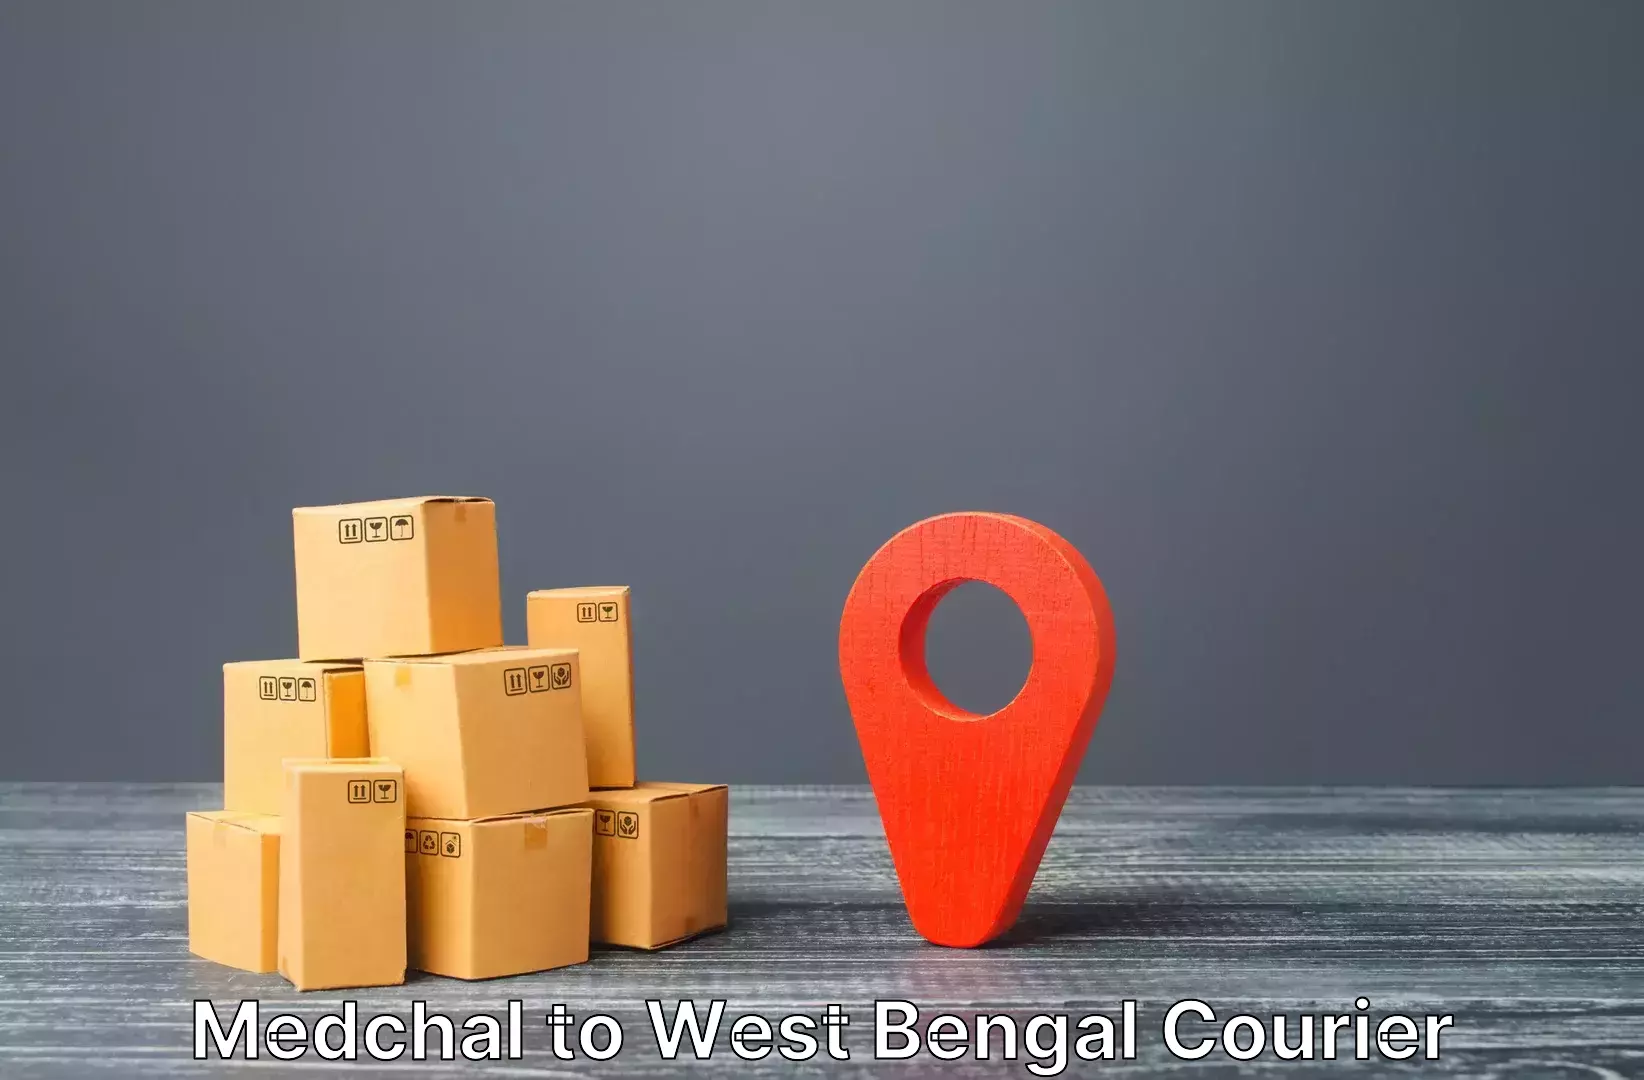 Luggage delivery estimate Medchal to Maheshtala